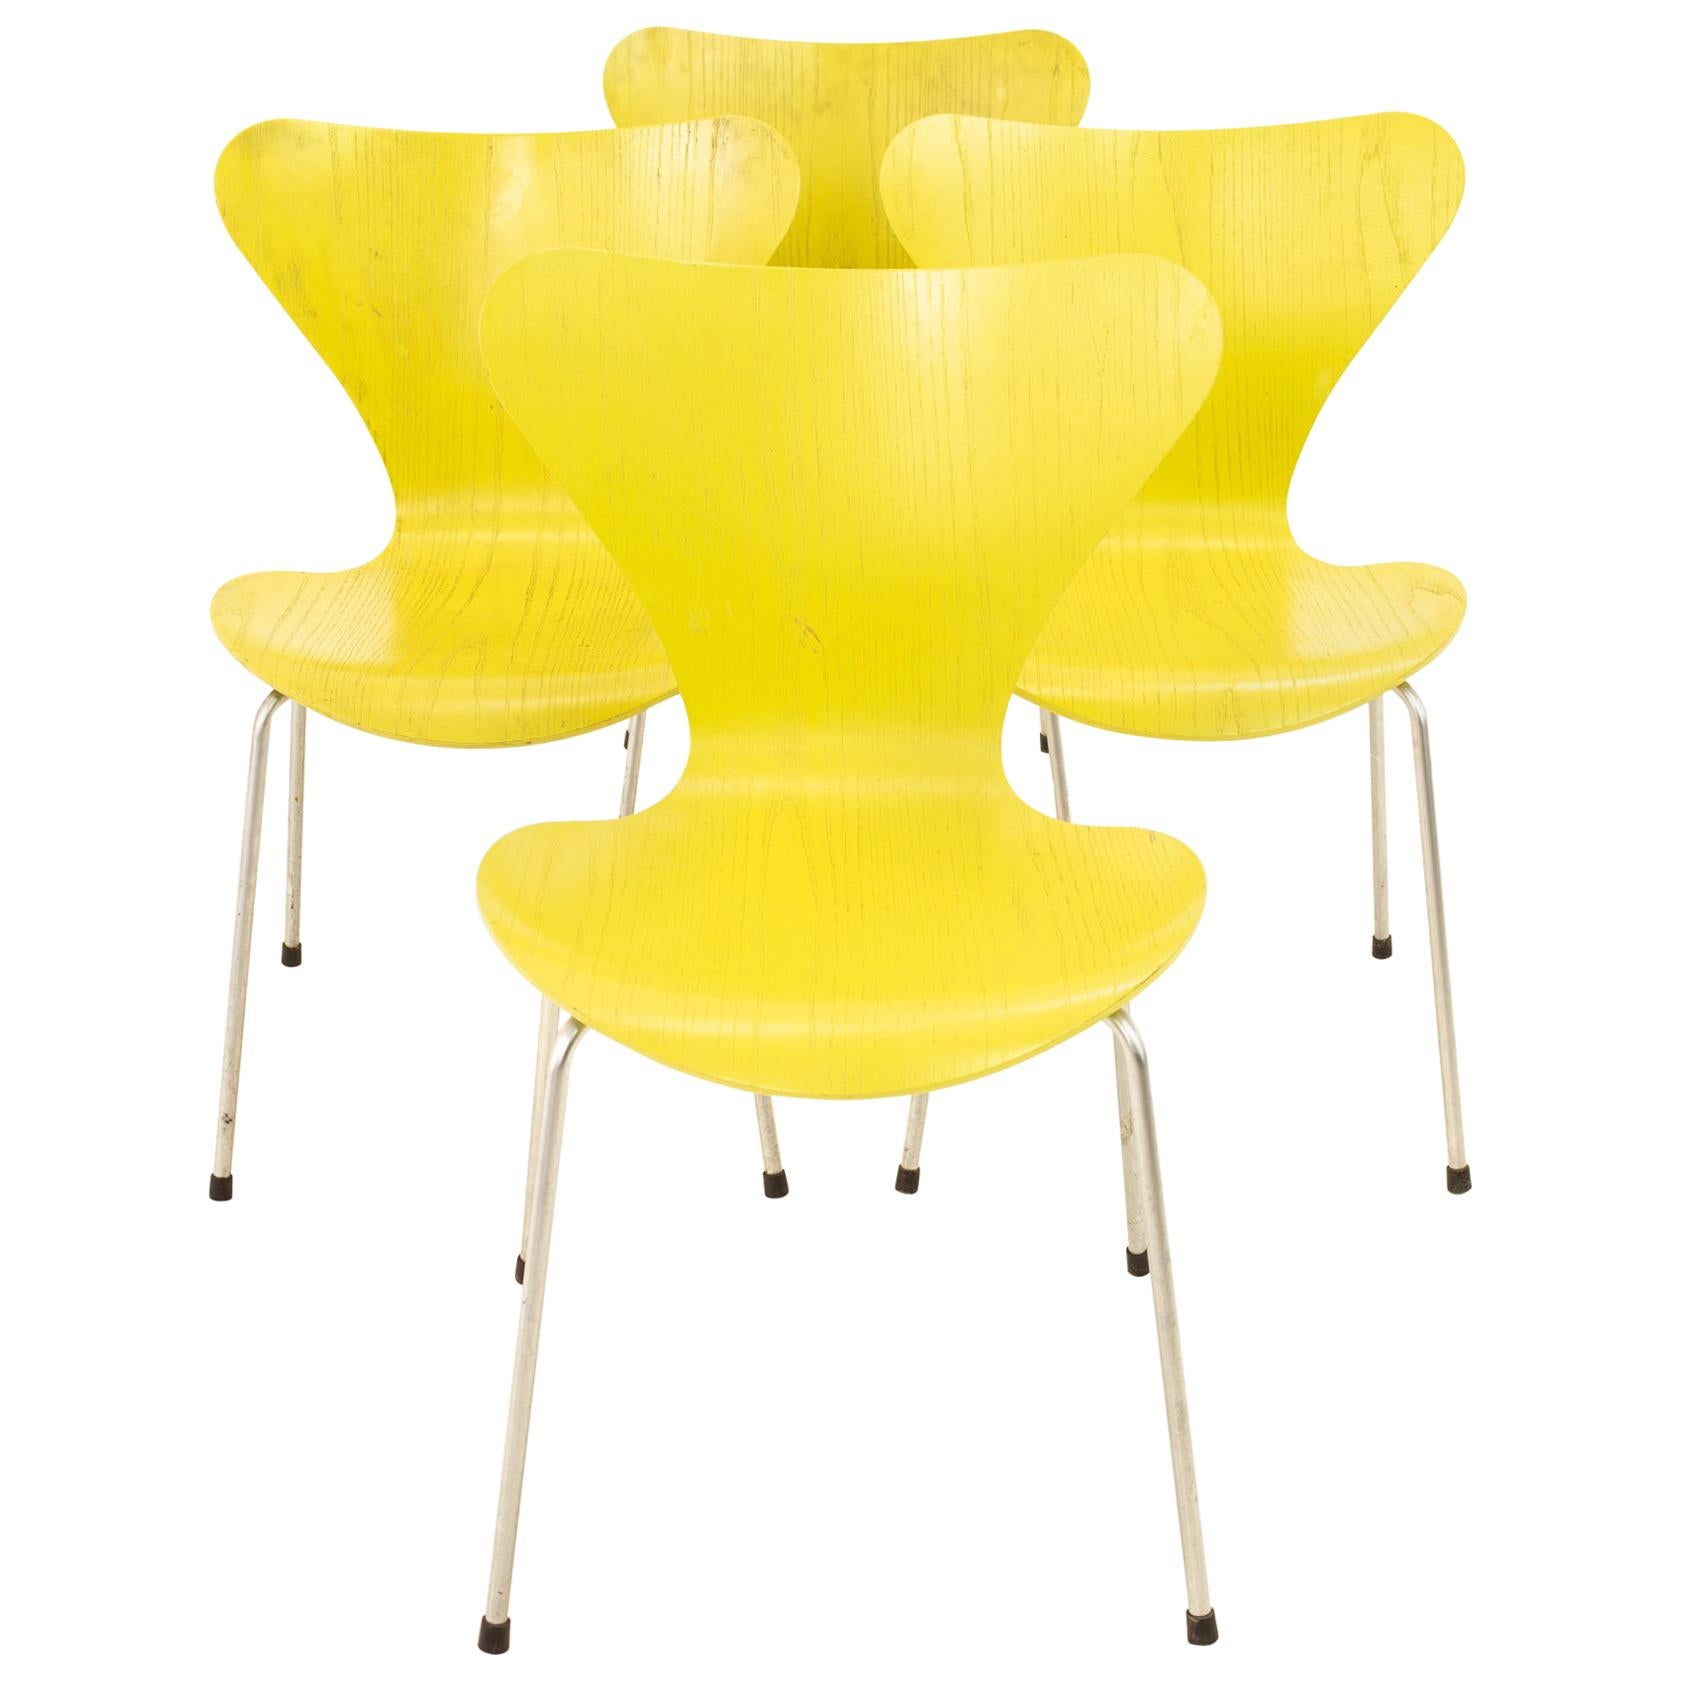 Chaise Arne Jacobsen For Fritz Hansen Mid Century Modern SERIES 7 - Lime - Set of 4

Chaque chaise mesure : 19.5 de large x 19,25 de profond x 31 de haut avec une hauteur de siège de 17,75 pouces

Cet ensemble est disponible dans ce que nous